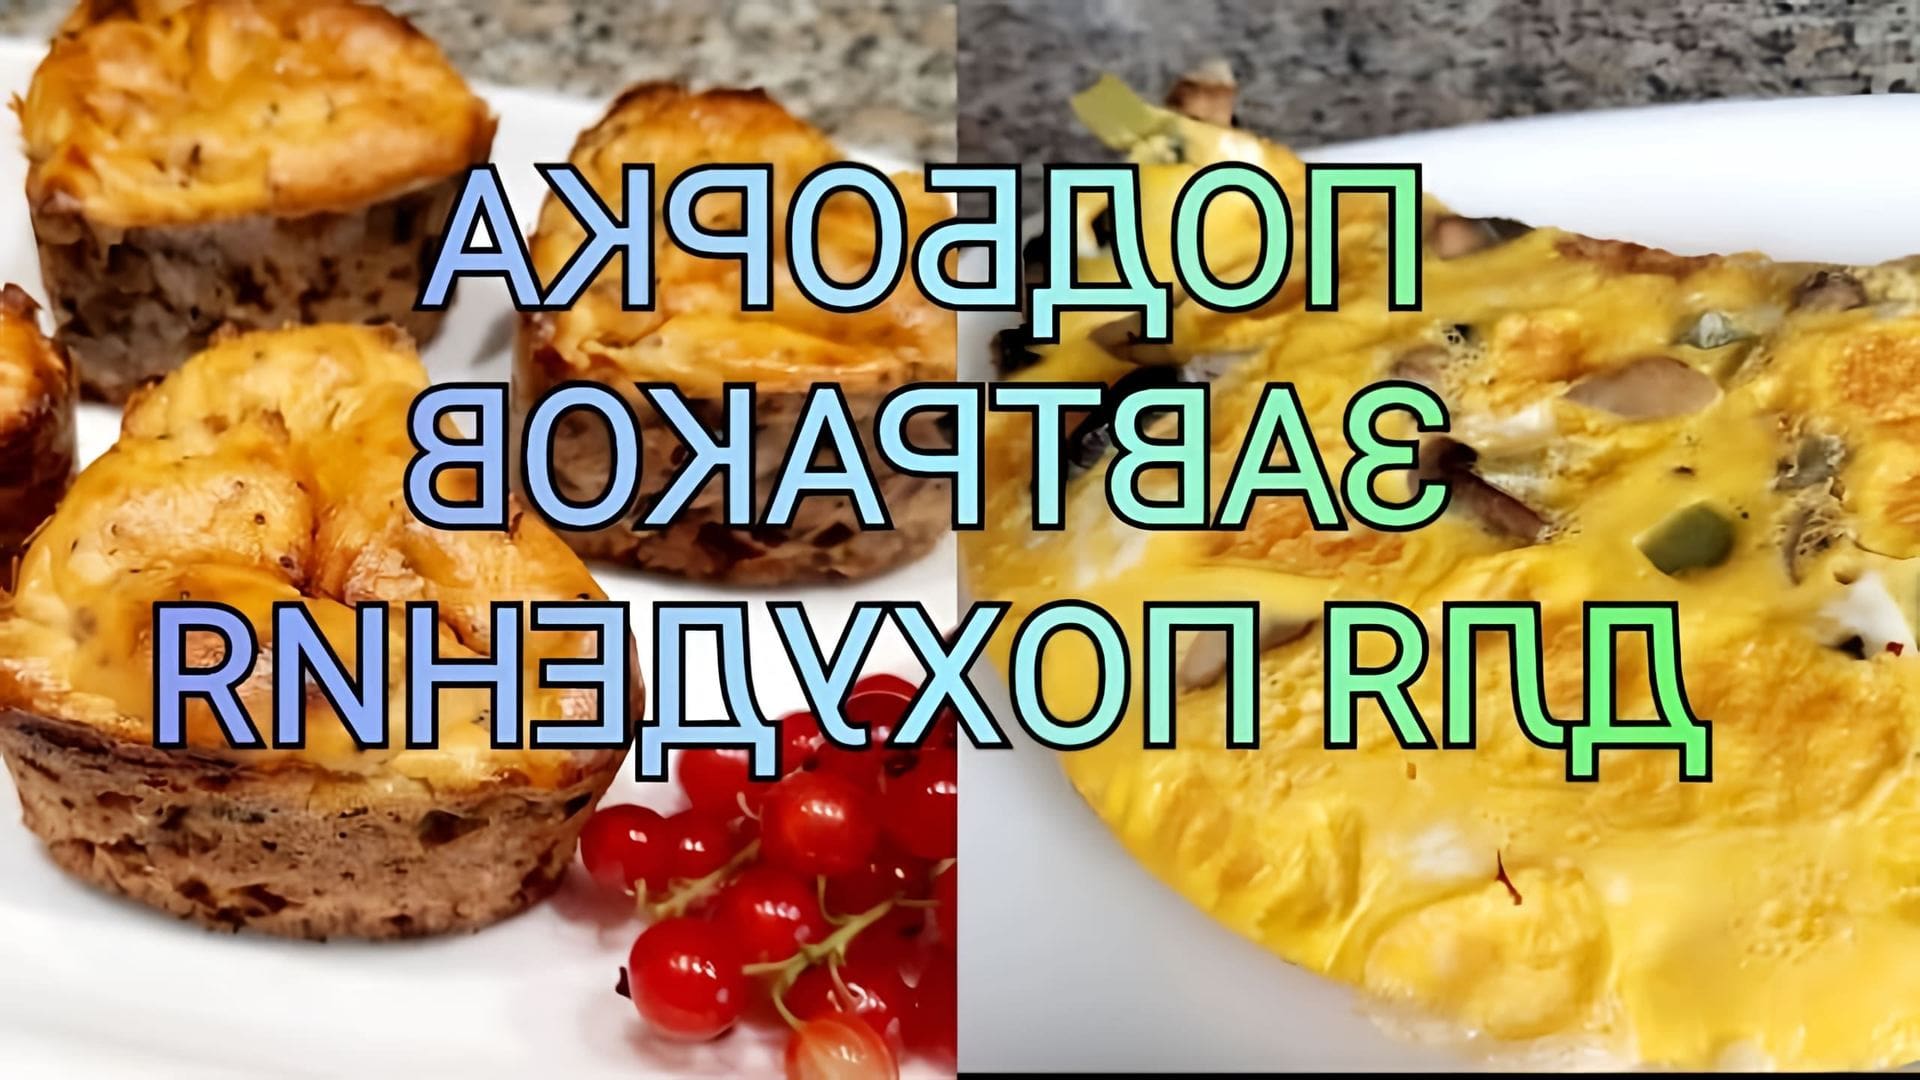 В этом видео Ольга, автор канала, предлагает три рецепта вкусных и полезных завтраков для похудения